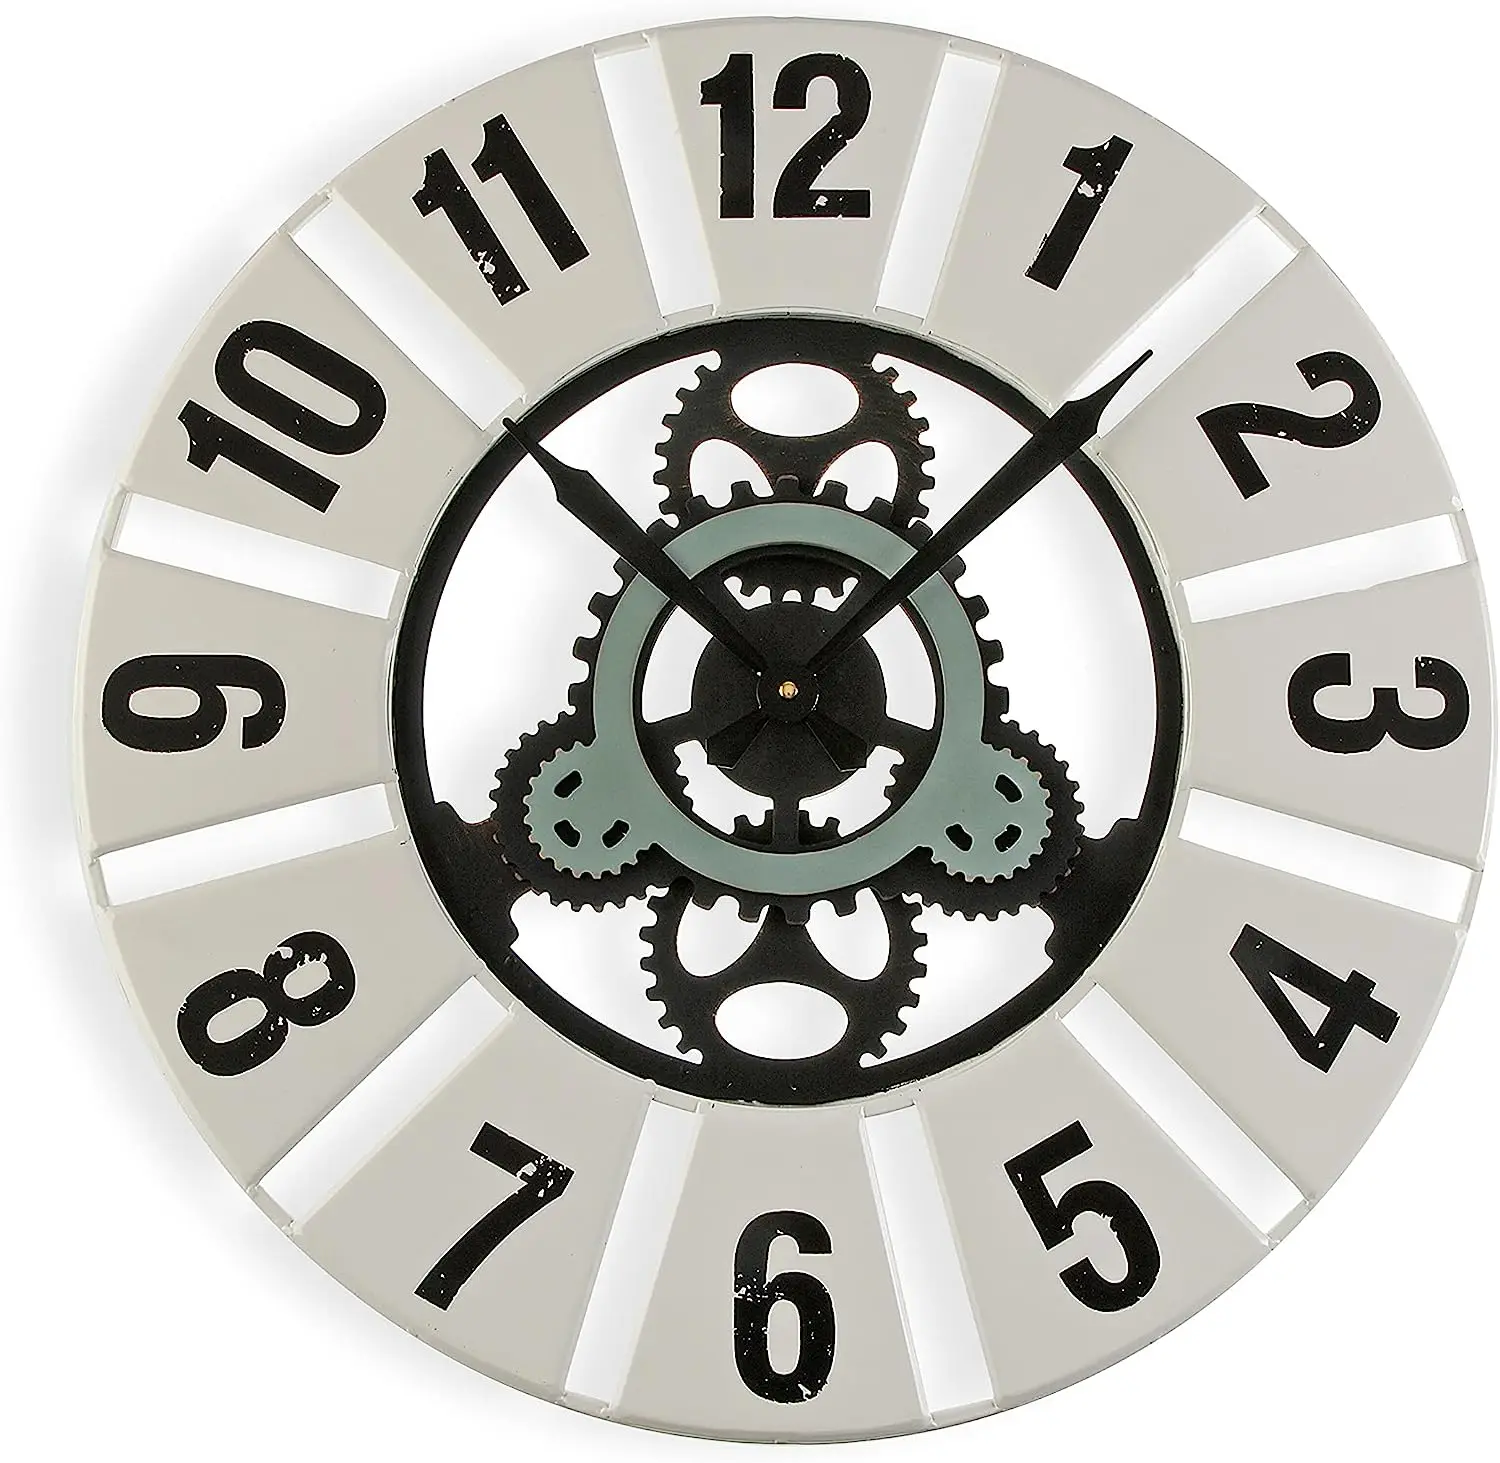 

Quilpie Reloj de Pared Silencioso Decorativo para la Cocina, el Salón, el Comedor o la Habitación, Medidas (Al x L x An) 60 x